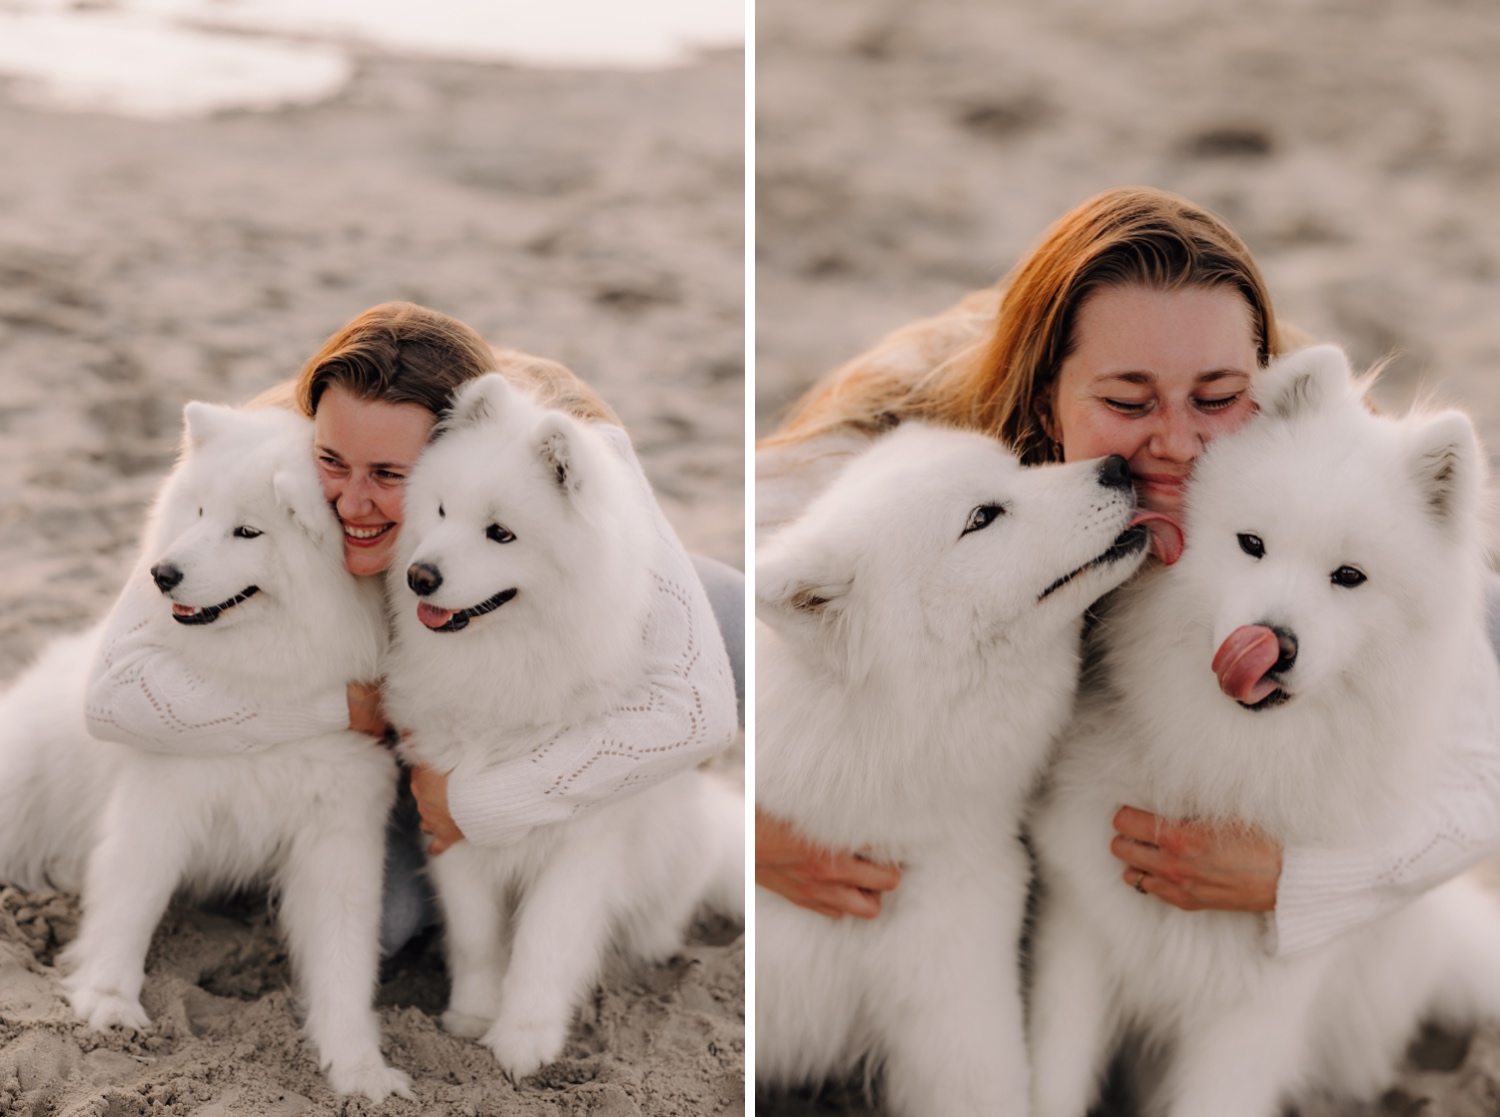 Huwelijksfotograaf Limburg - hondjes worden stevig geknuffeld door baasje